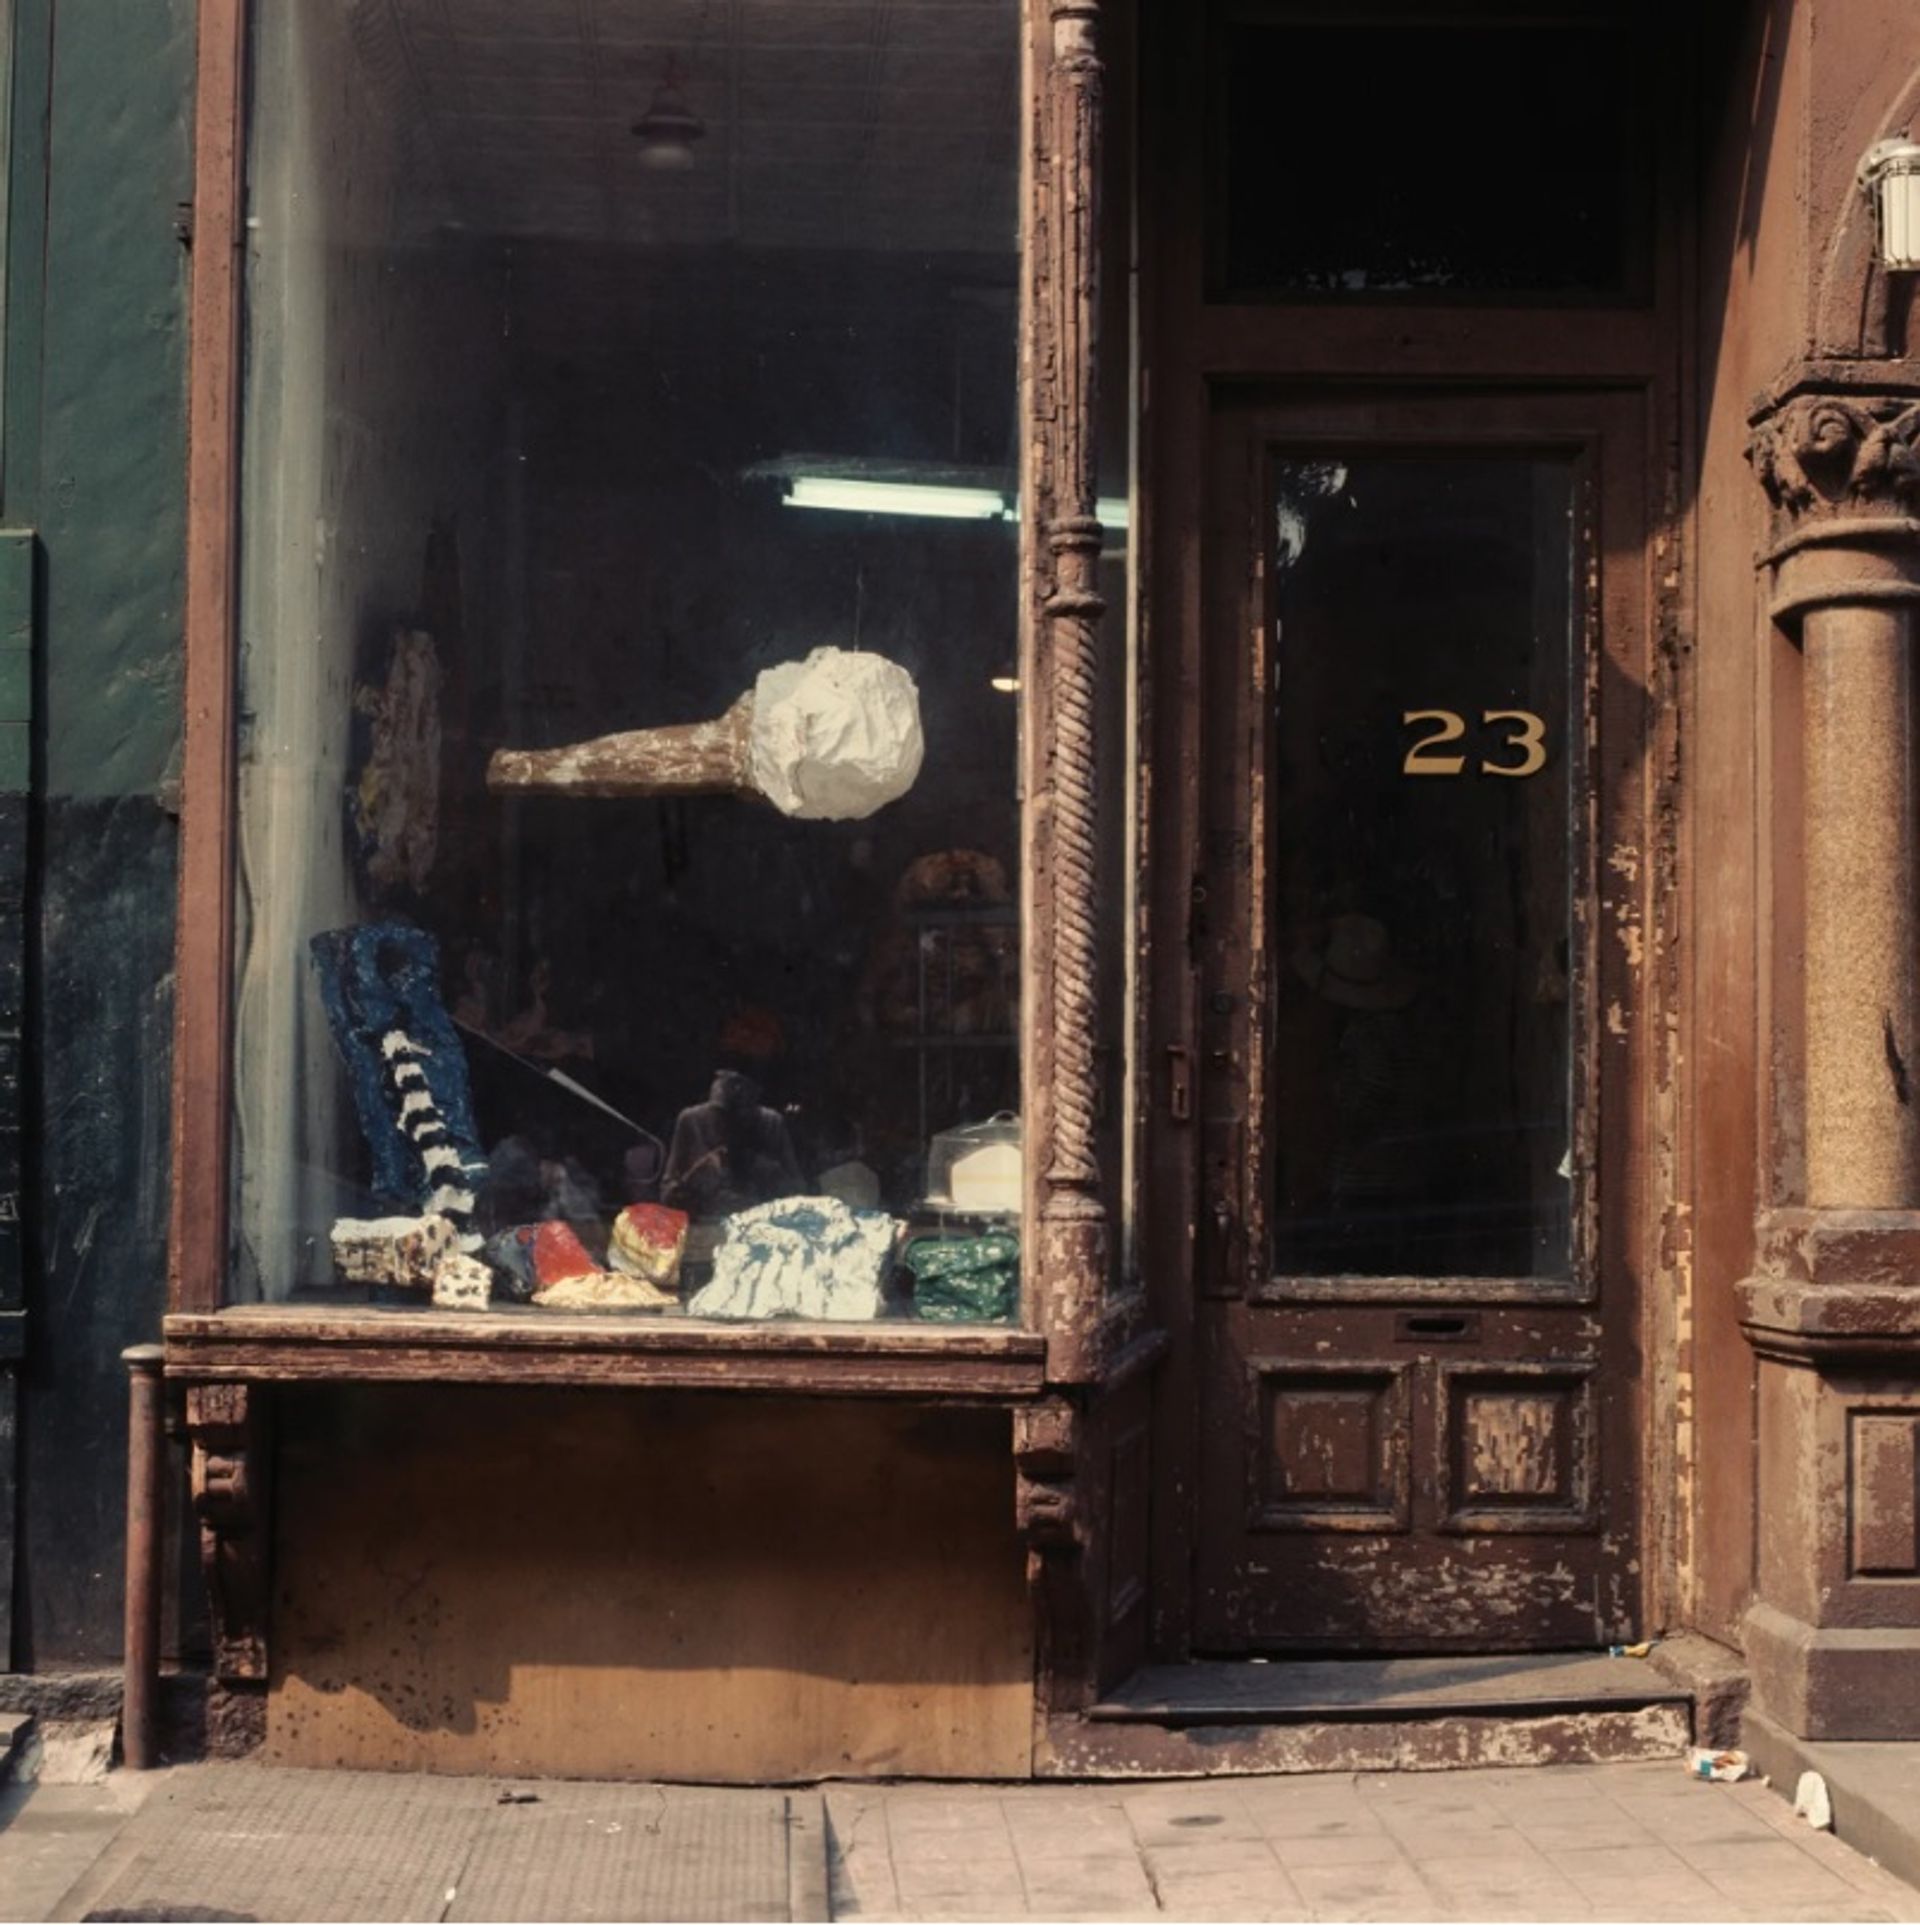 תצלום של The Store of Claes Oldenburg (1967) של סטרטבנט, ב-623 East Ninth Street, ניו יורק

© Estate Sturtevant, פריז